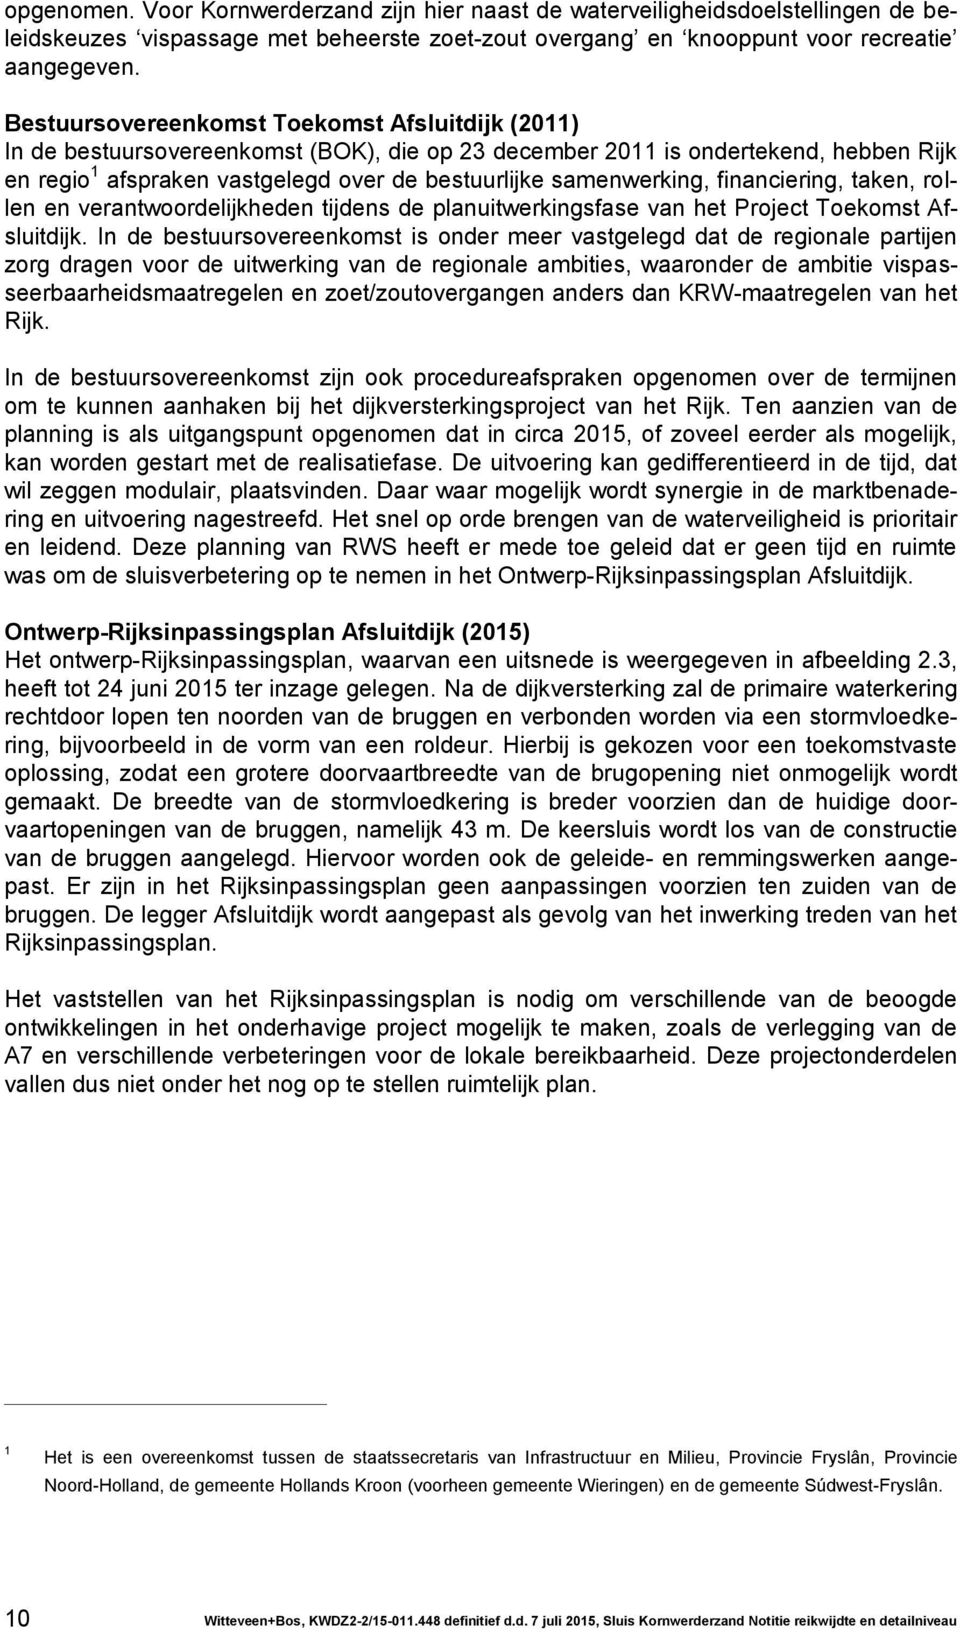 samenwerking, financiering, taken, rollen en verantwoordelijkheden tijdens de planuitwerkingsfase van het Project Toekomst Afsluitdijk.